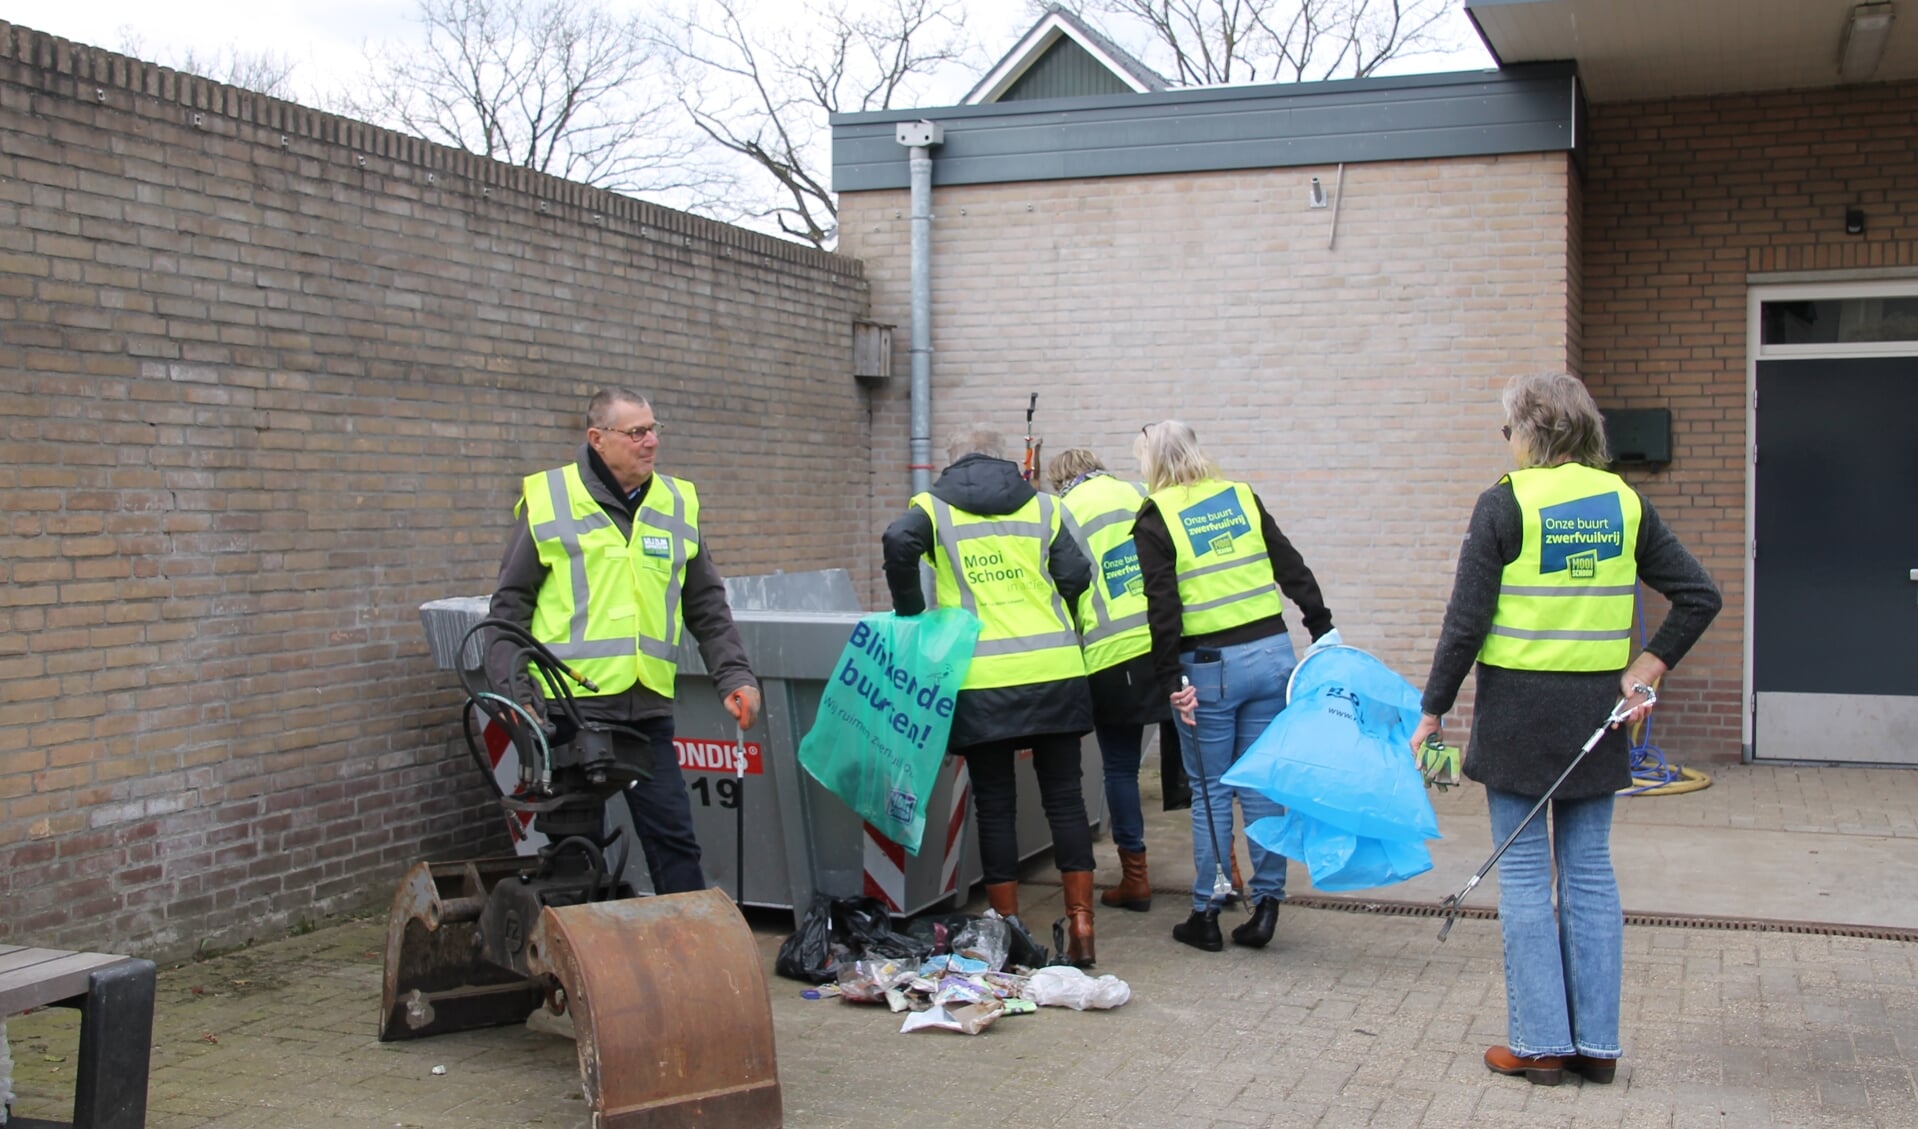 Gerard en een aantal leden van de groep Schoon Oost Gelre bij de afvalcontainer achter het gemeentehuis. Foto: Annekée Cuppers